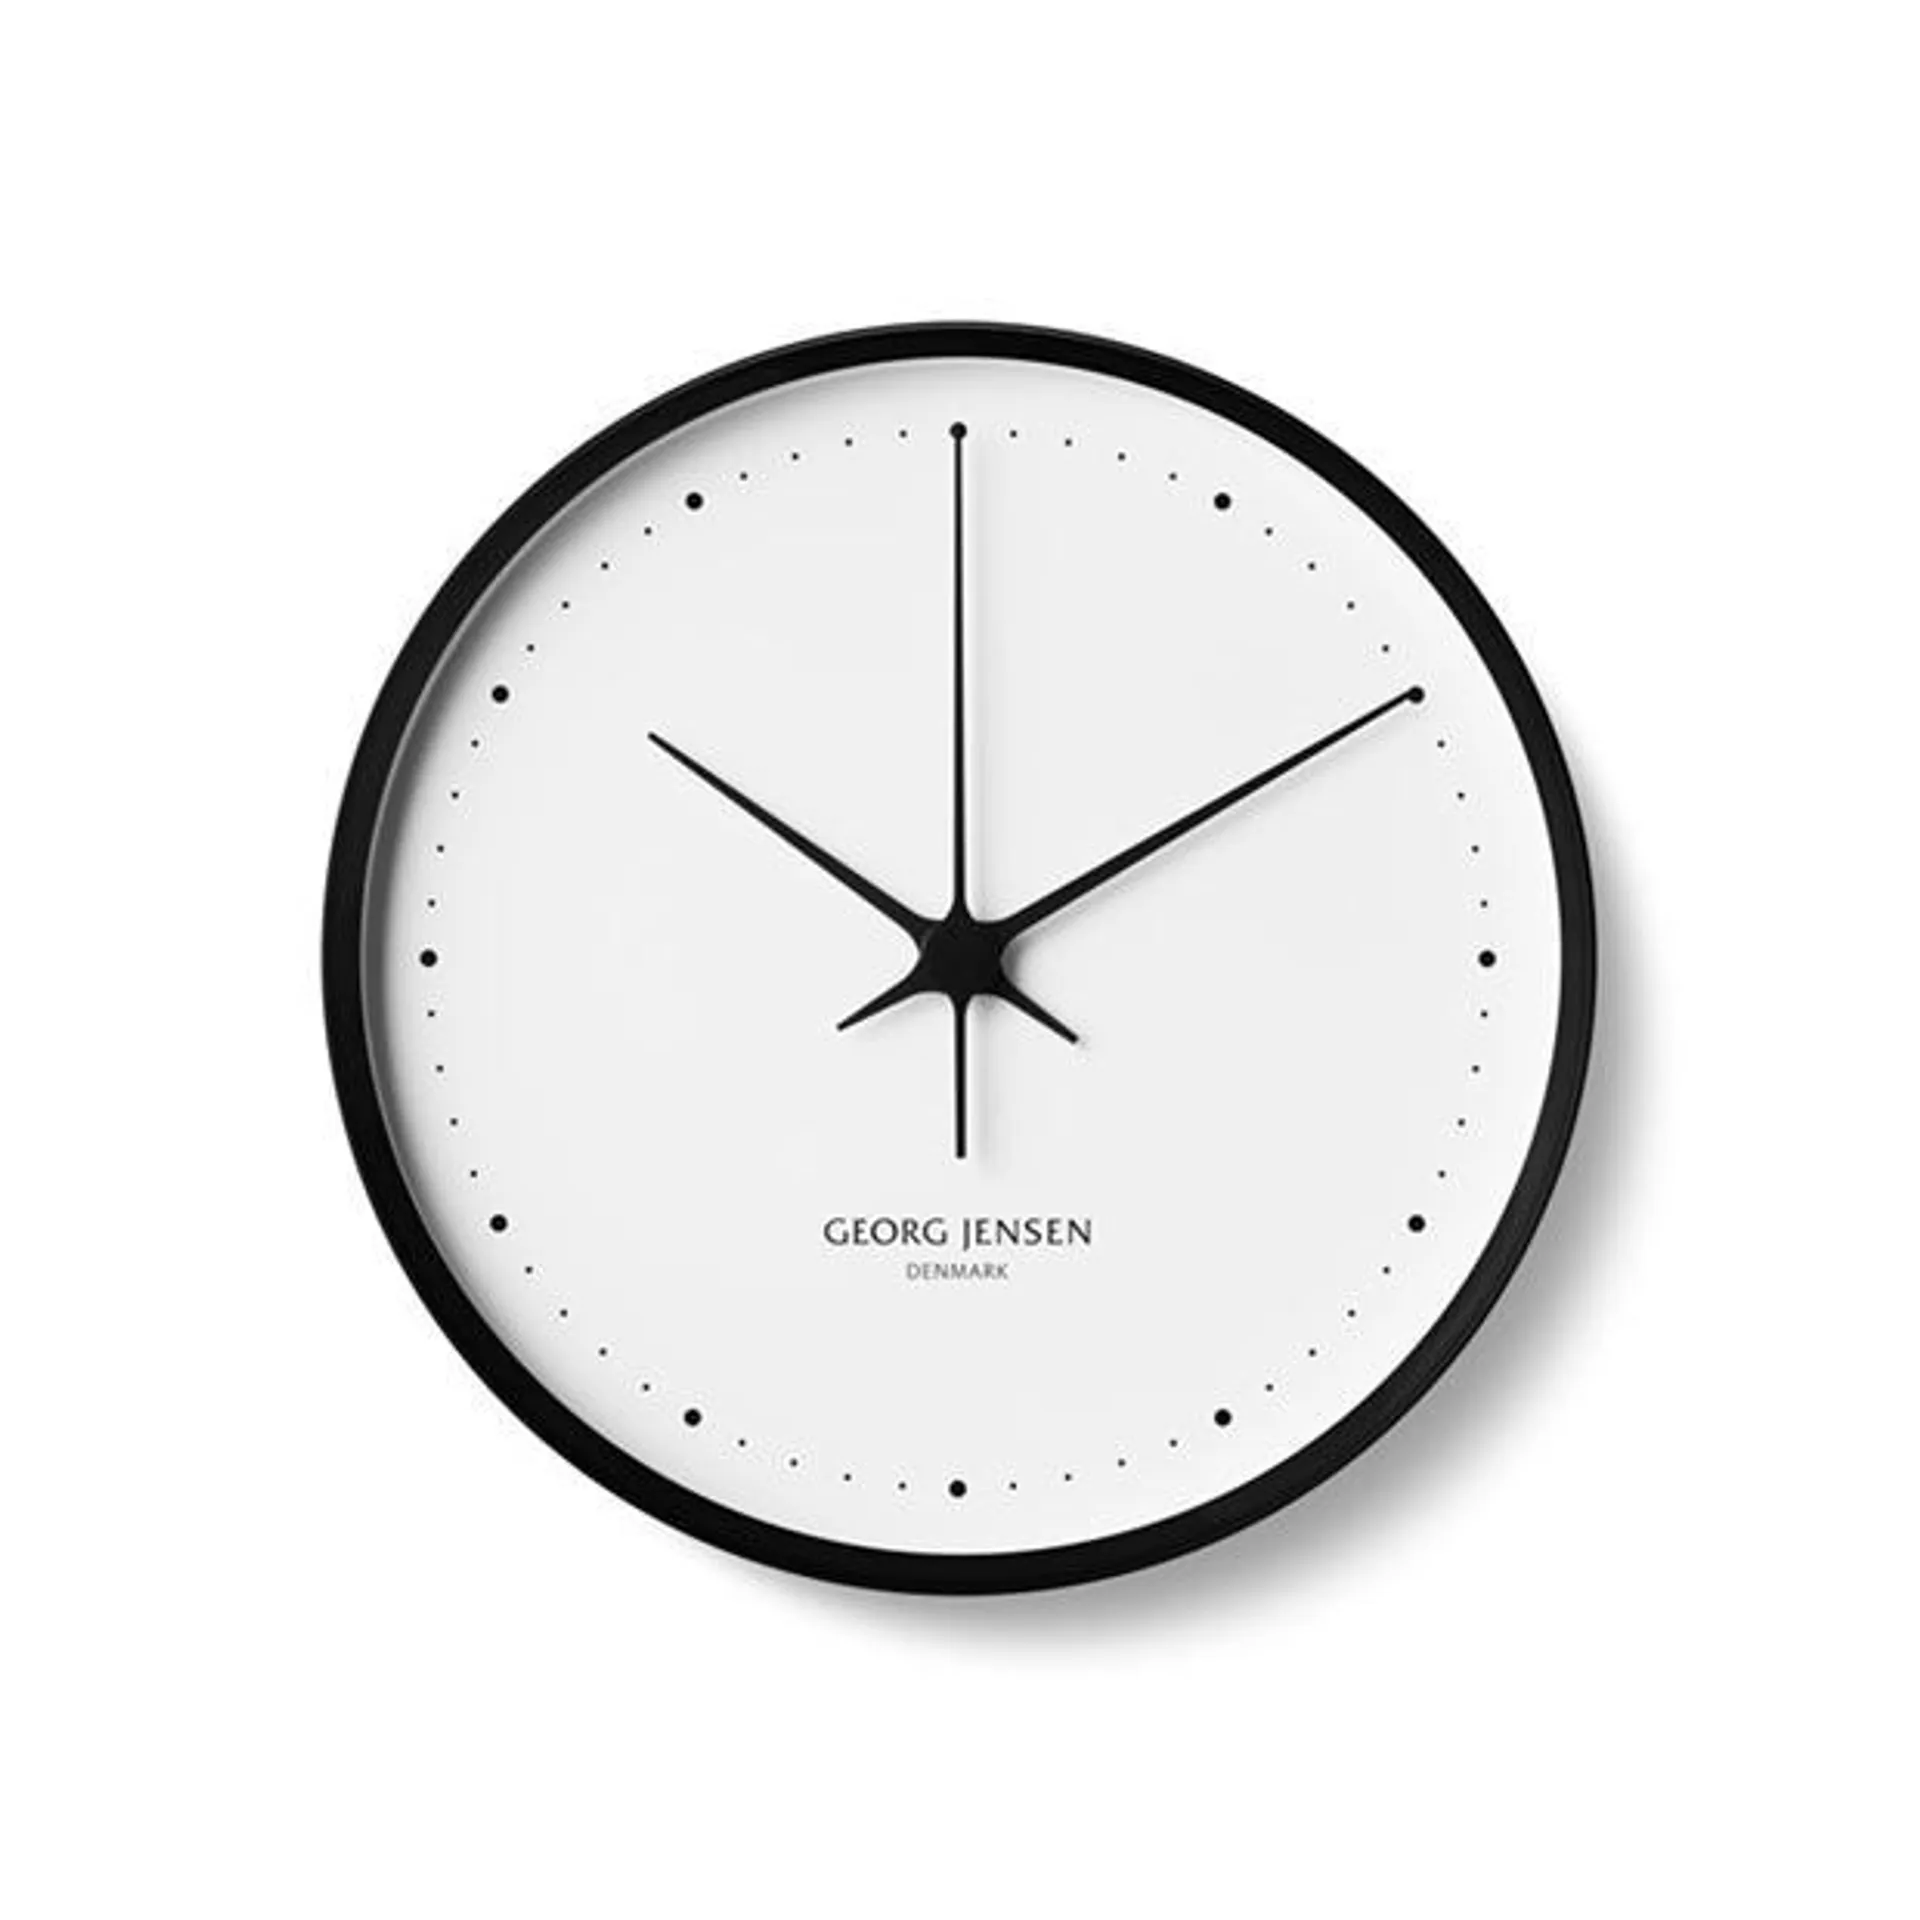 Henning Koppel Clock - 30cm